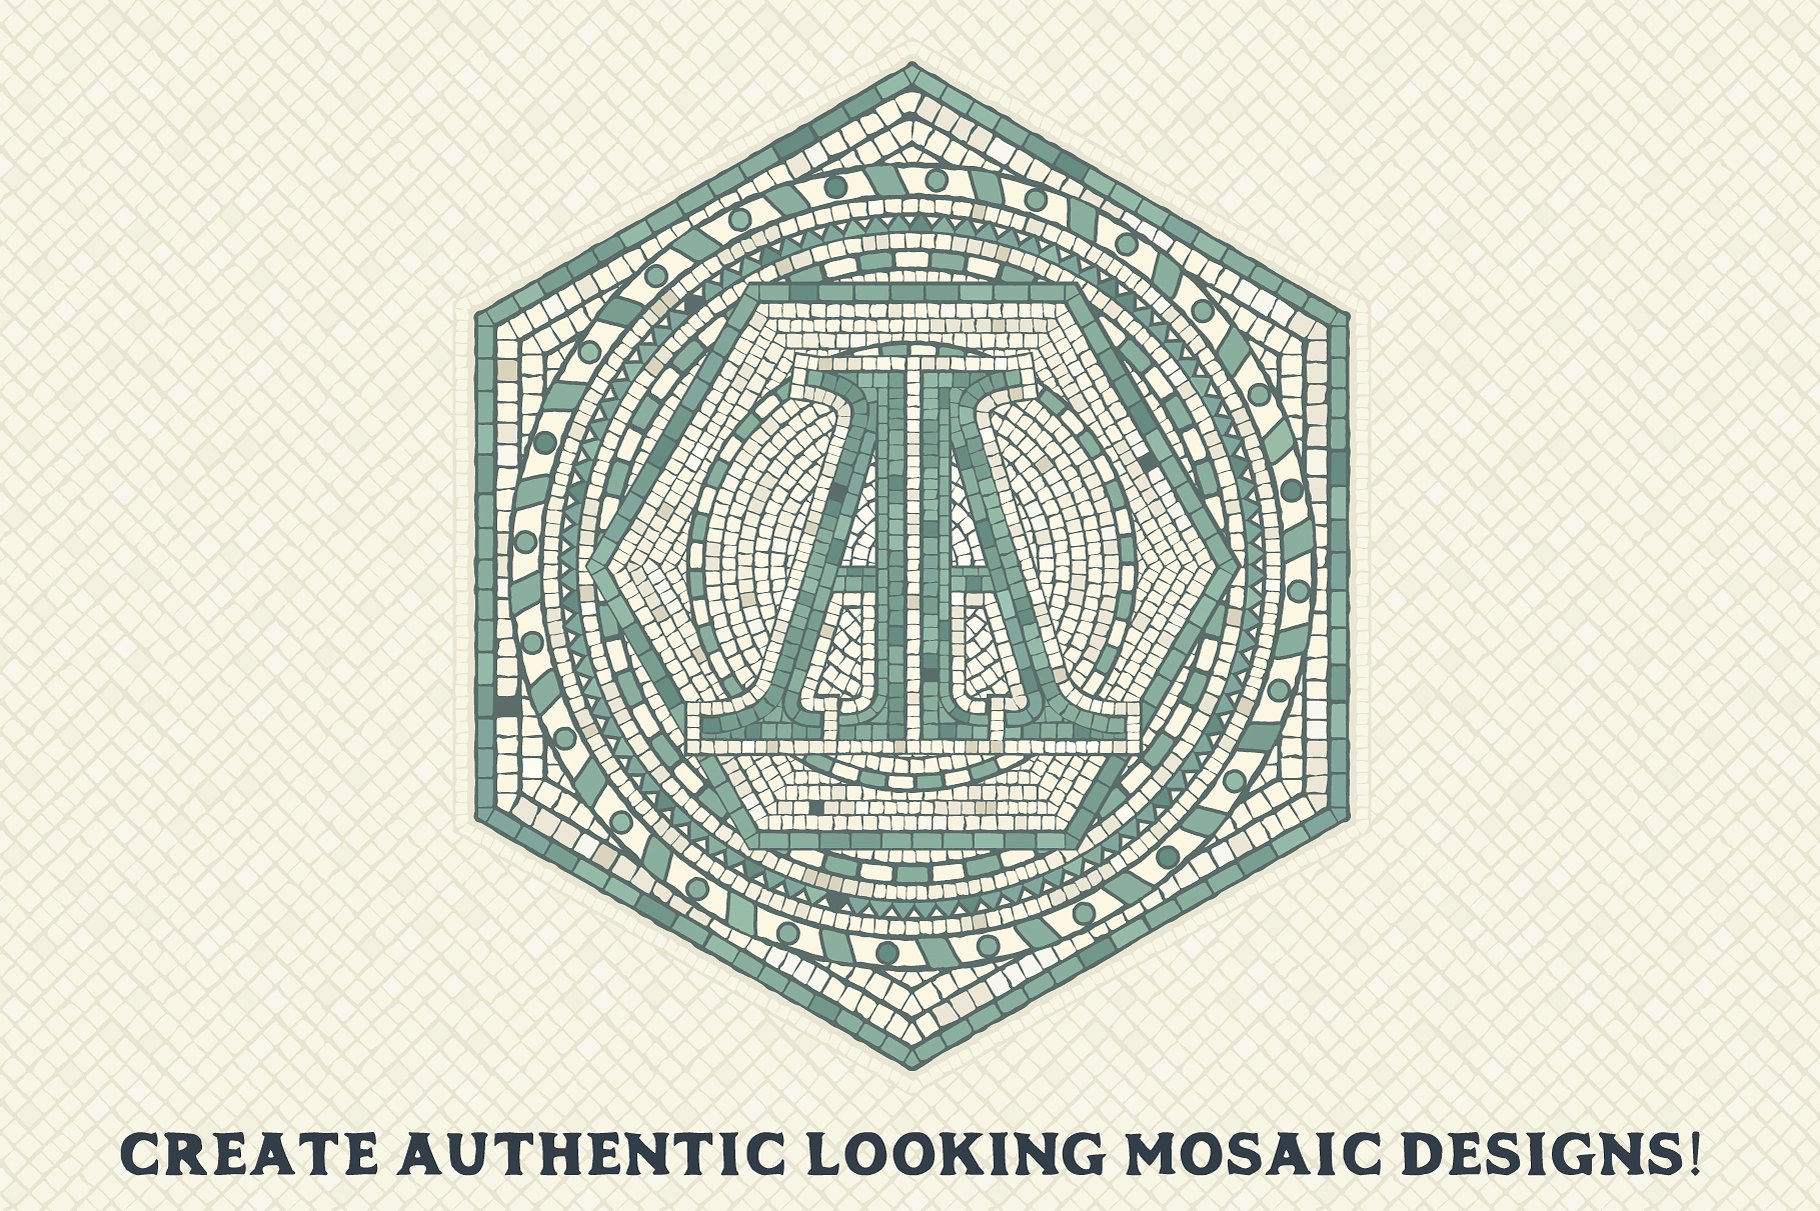 独特的马赛克瓷砖刷制造商画笔图案Mosaic Maker -